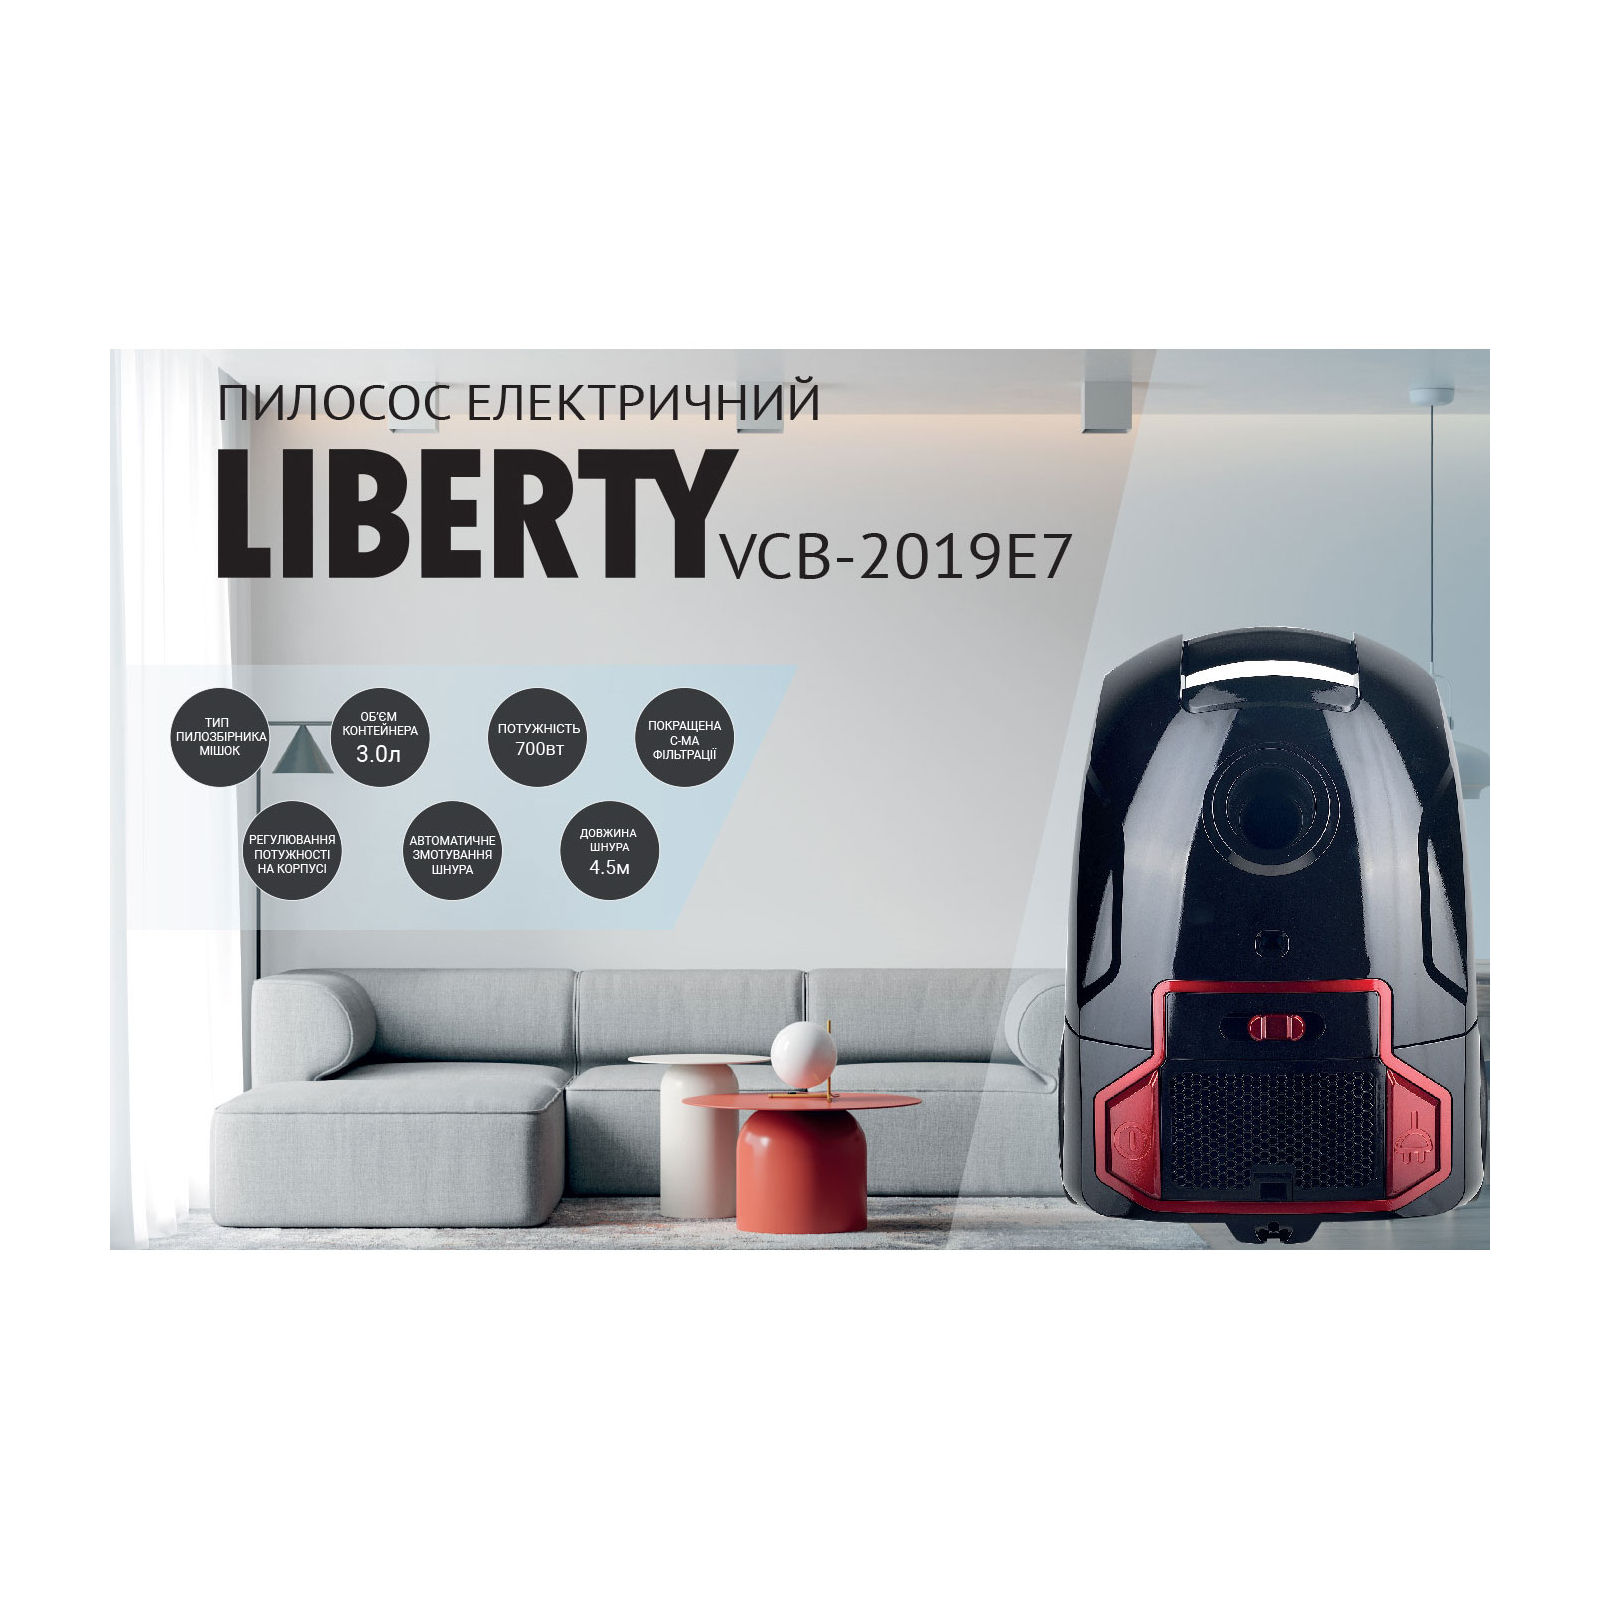 Пылесос Liberty VCB-2019 E7 изображение 3